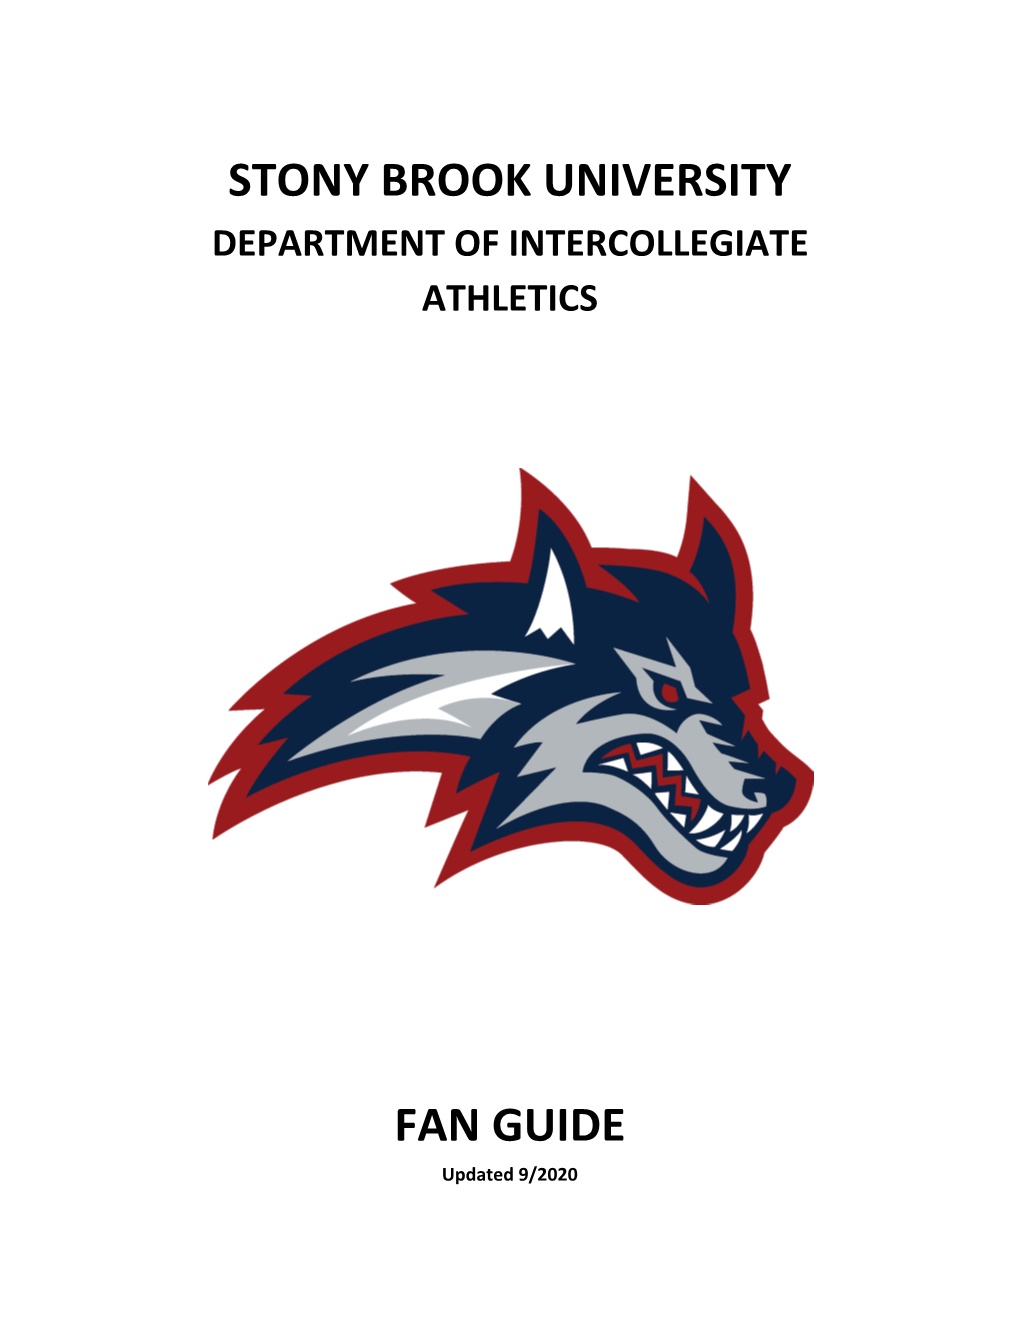 Stony Brook University Fan Guide